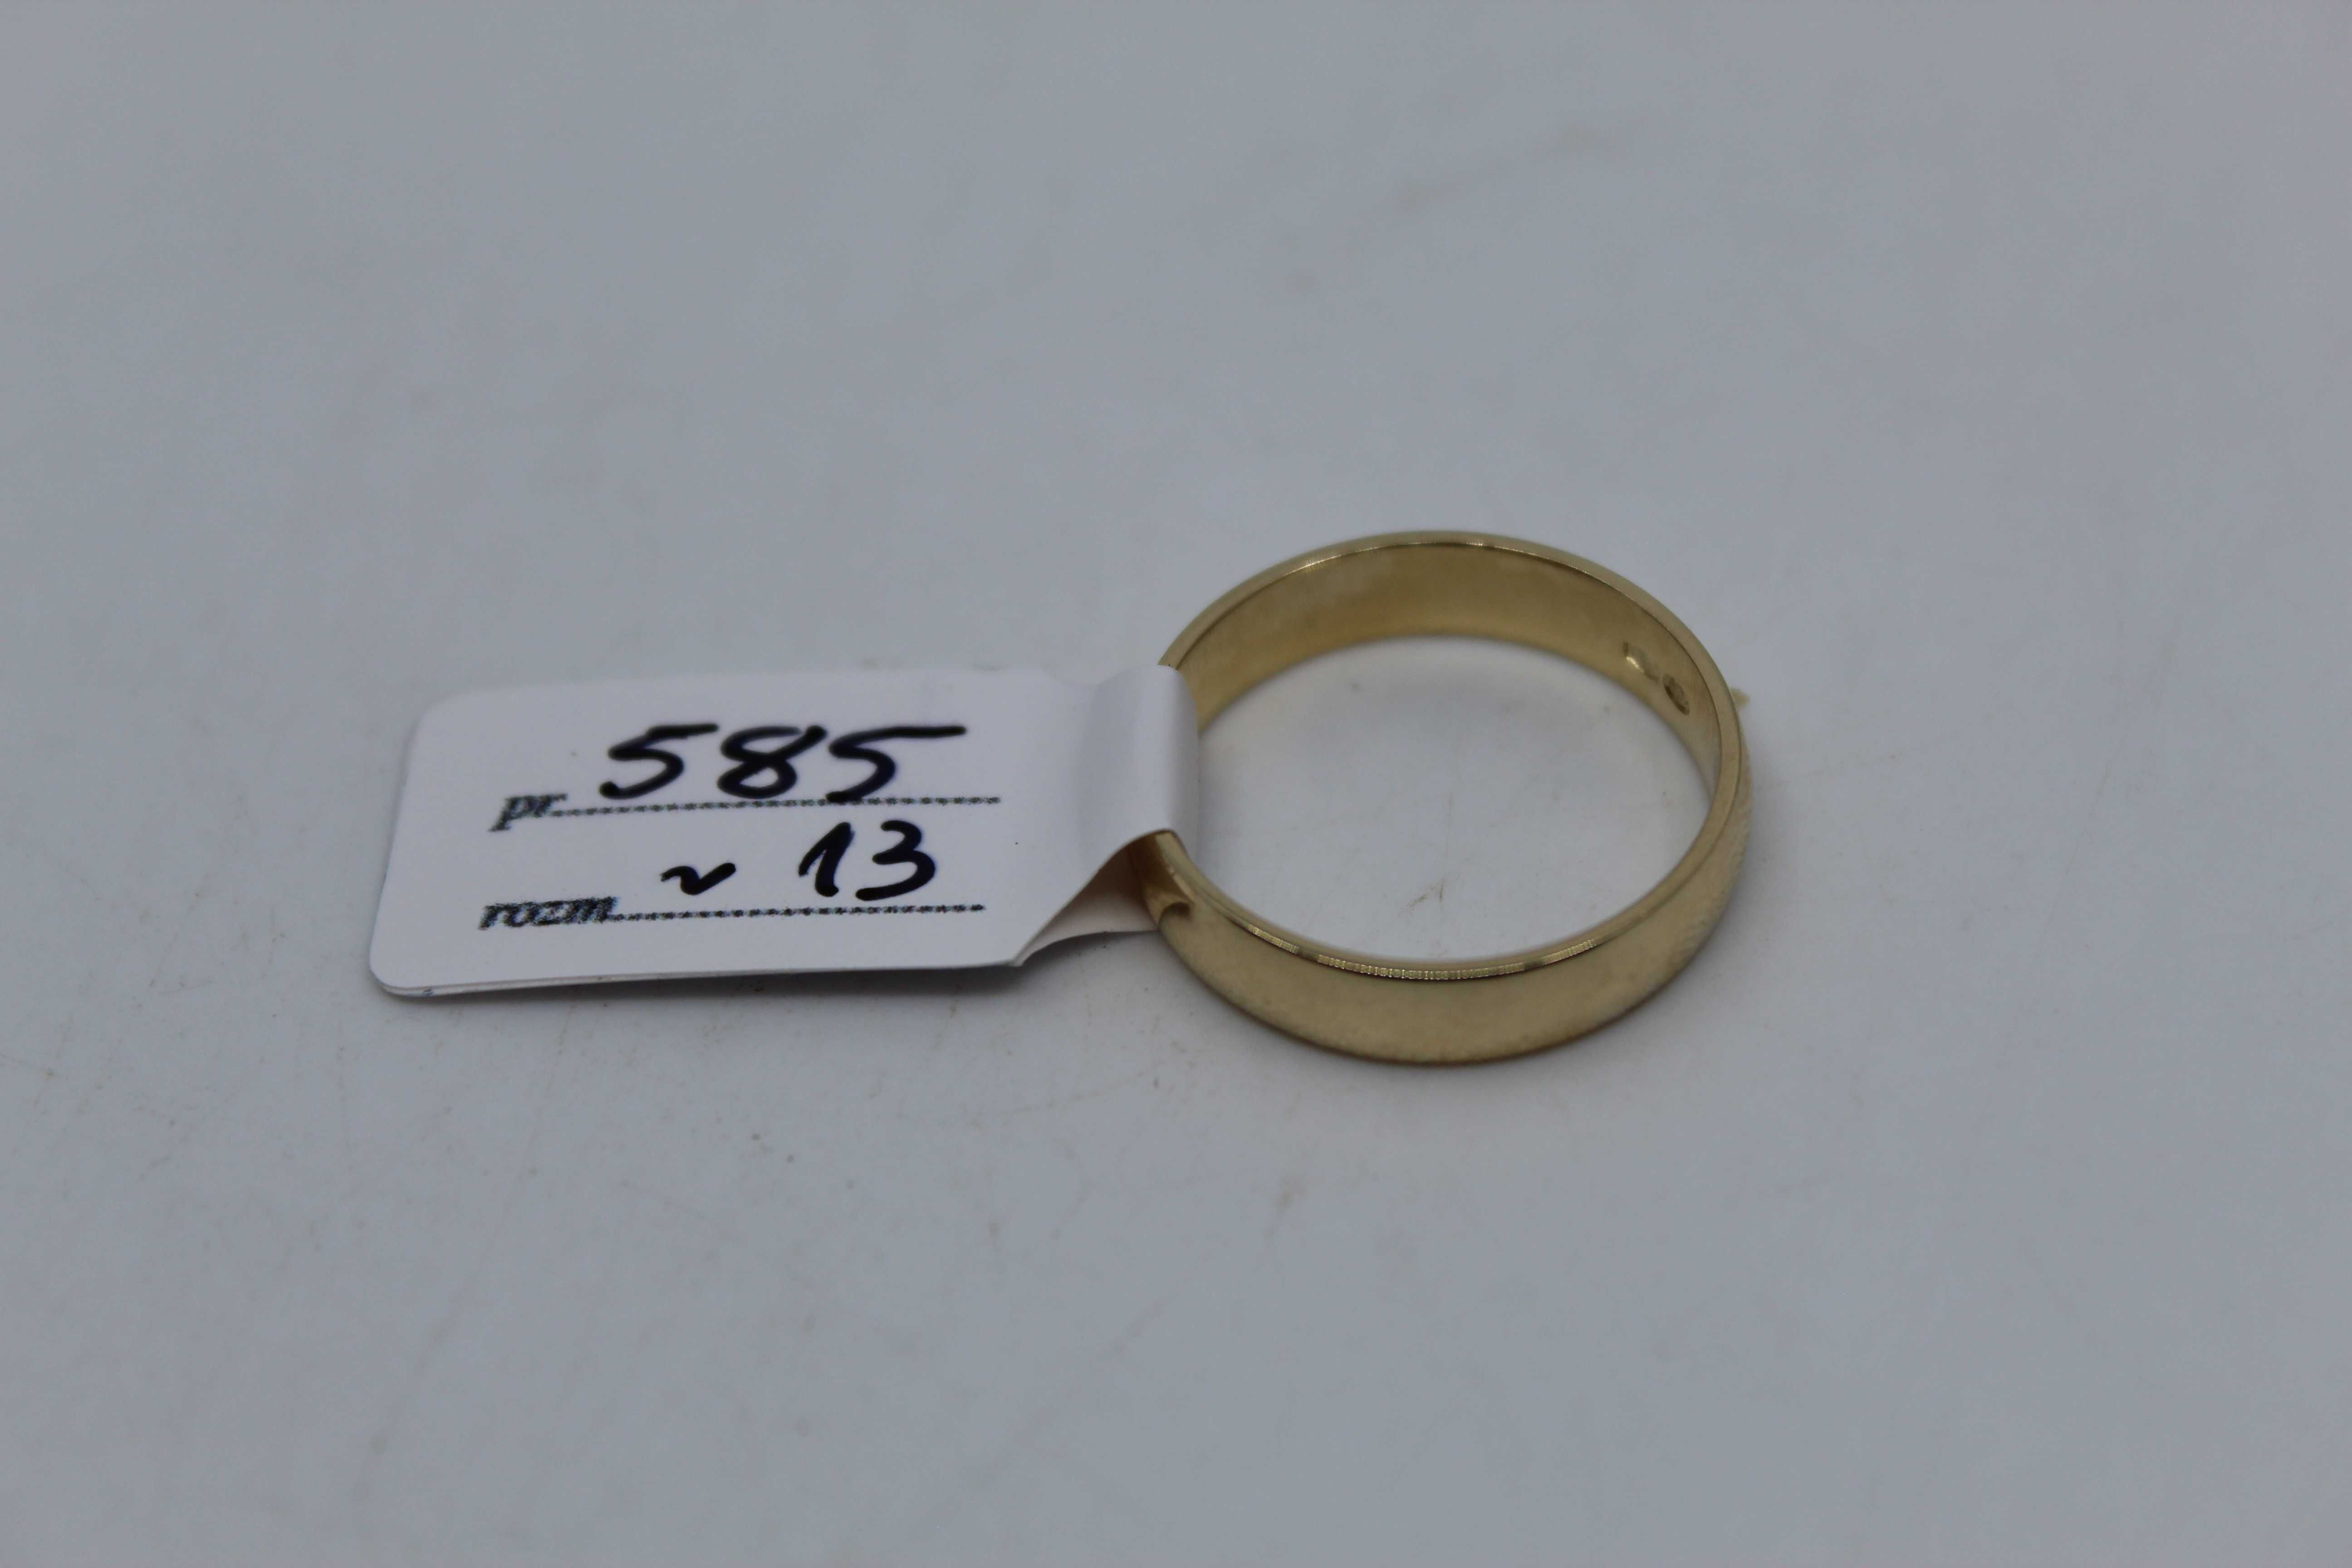 złota obrączka 585 14K 3,21 gram Rozmiar 13 NOWA Okazja